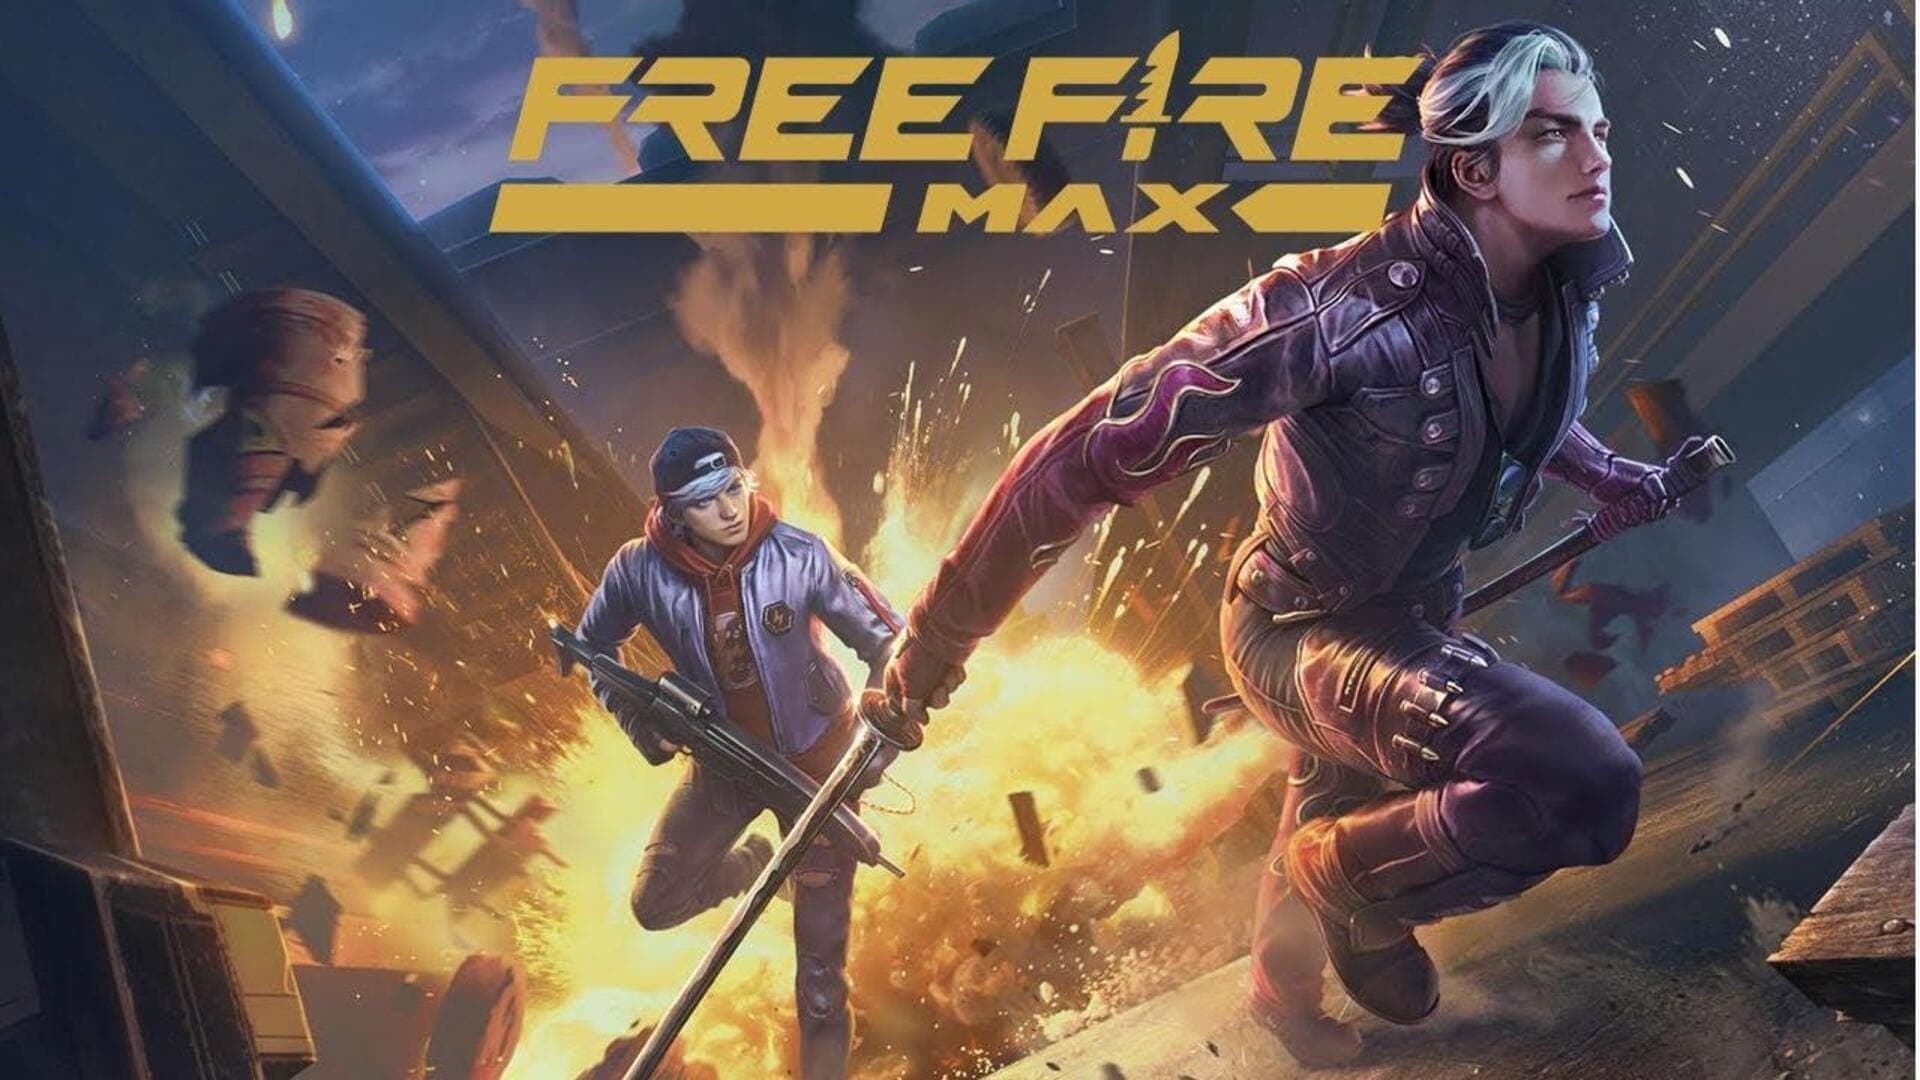 Những cải tiến trong ứng dụng game Free Fire MAX